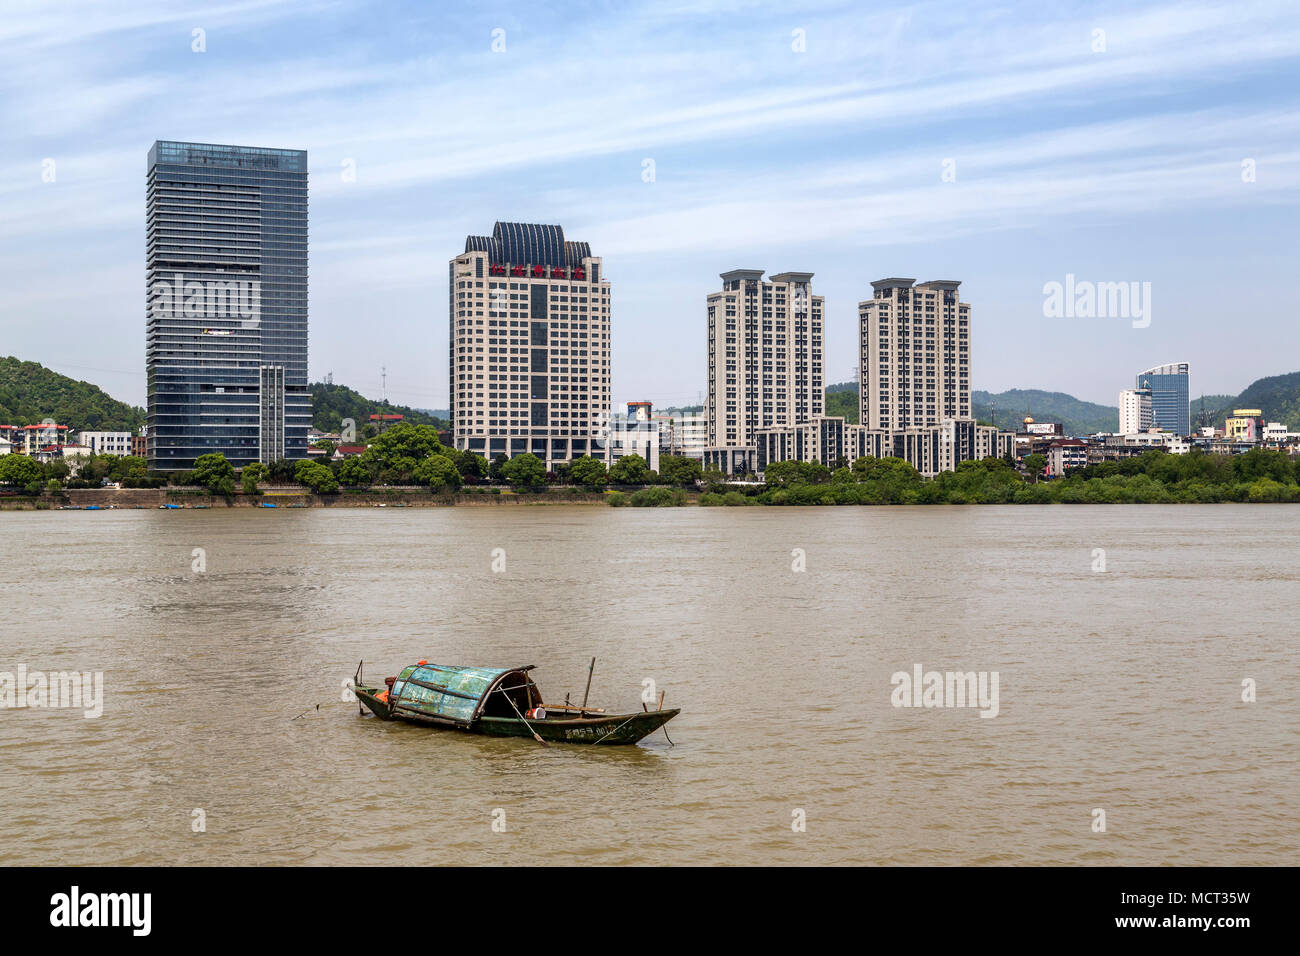 Eine sampan schwimmt auf der Fuchun Flusses durch eine Reihe von modernen Hochhäusern entlang der Flussufer gegenübergestellt. Tonglu, Zhejiang Province, China. Stockfoto